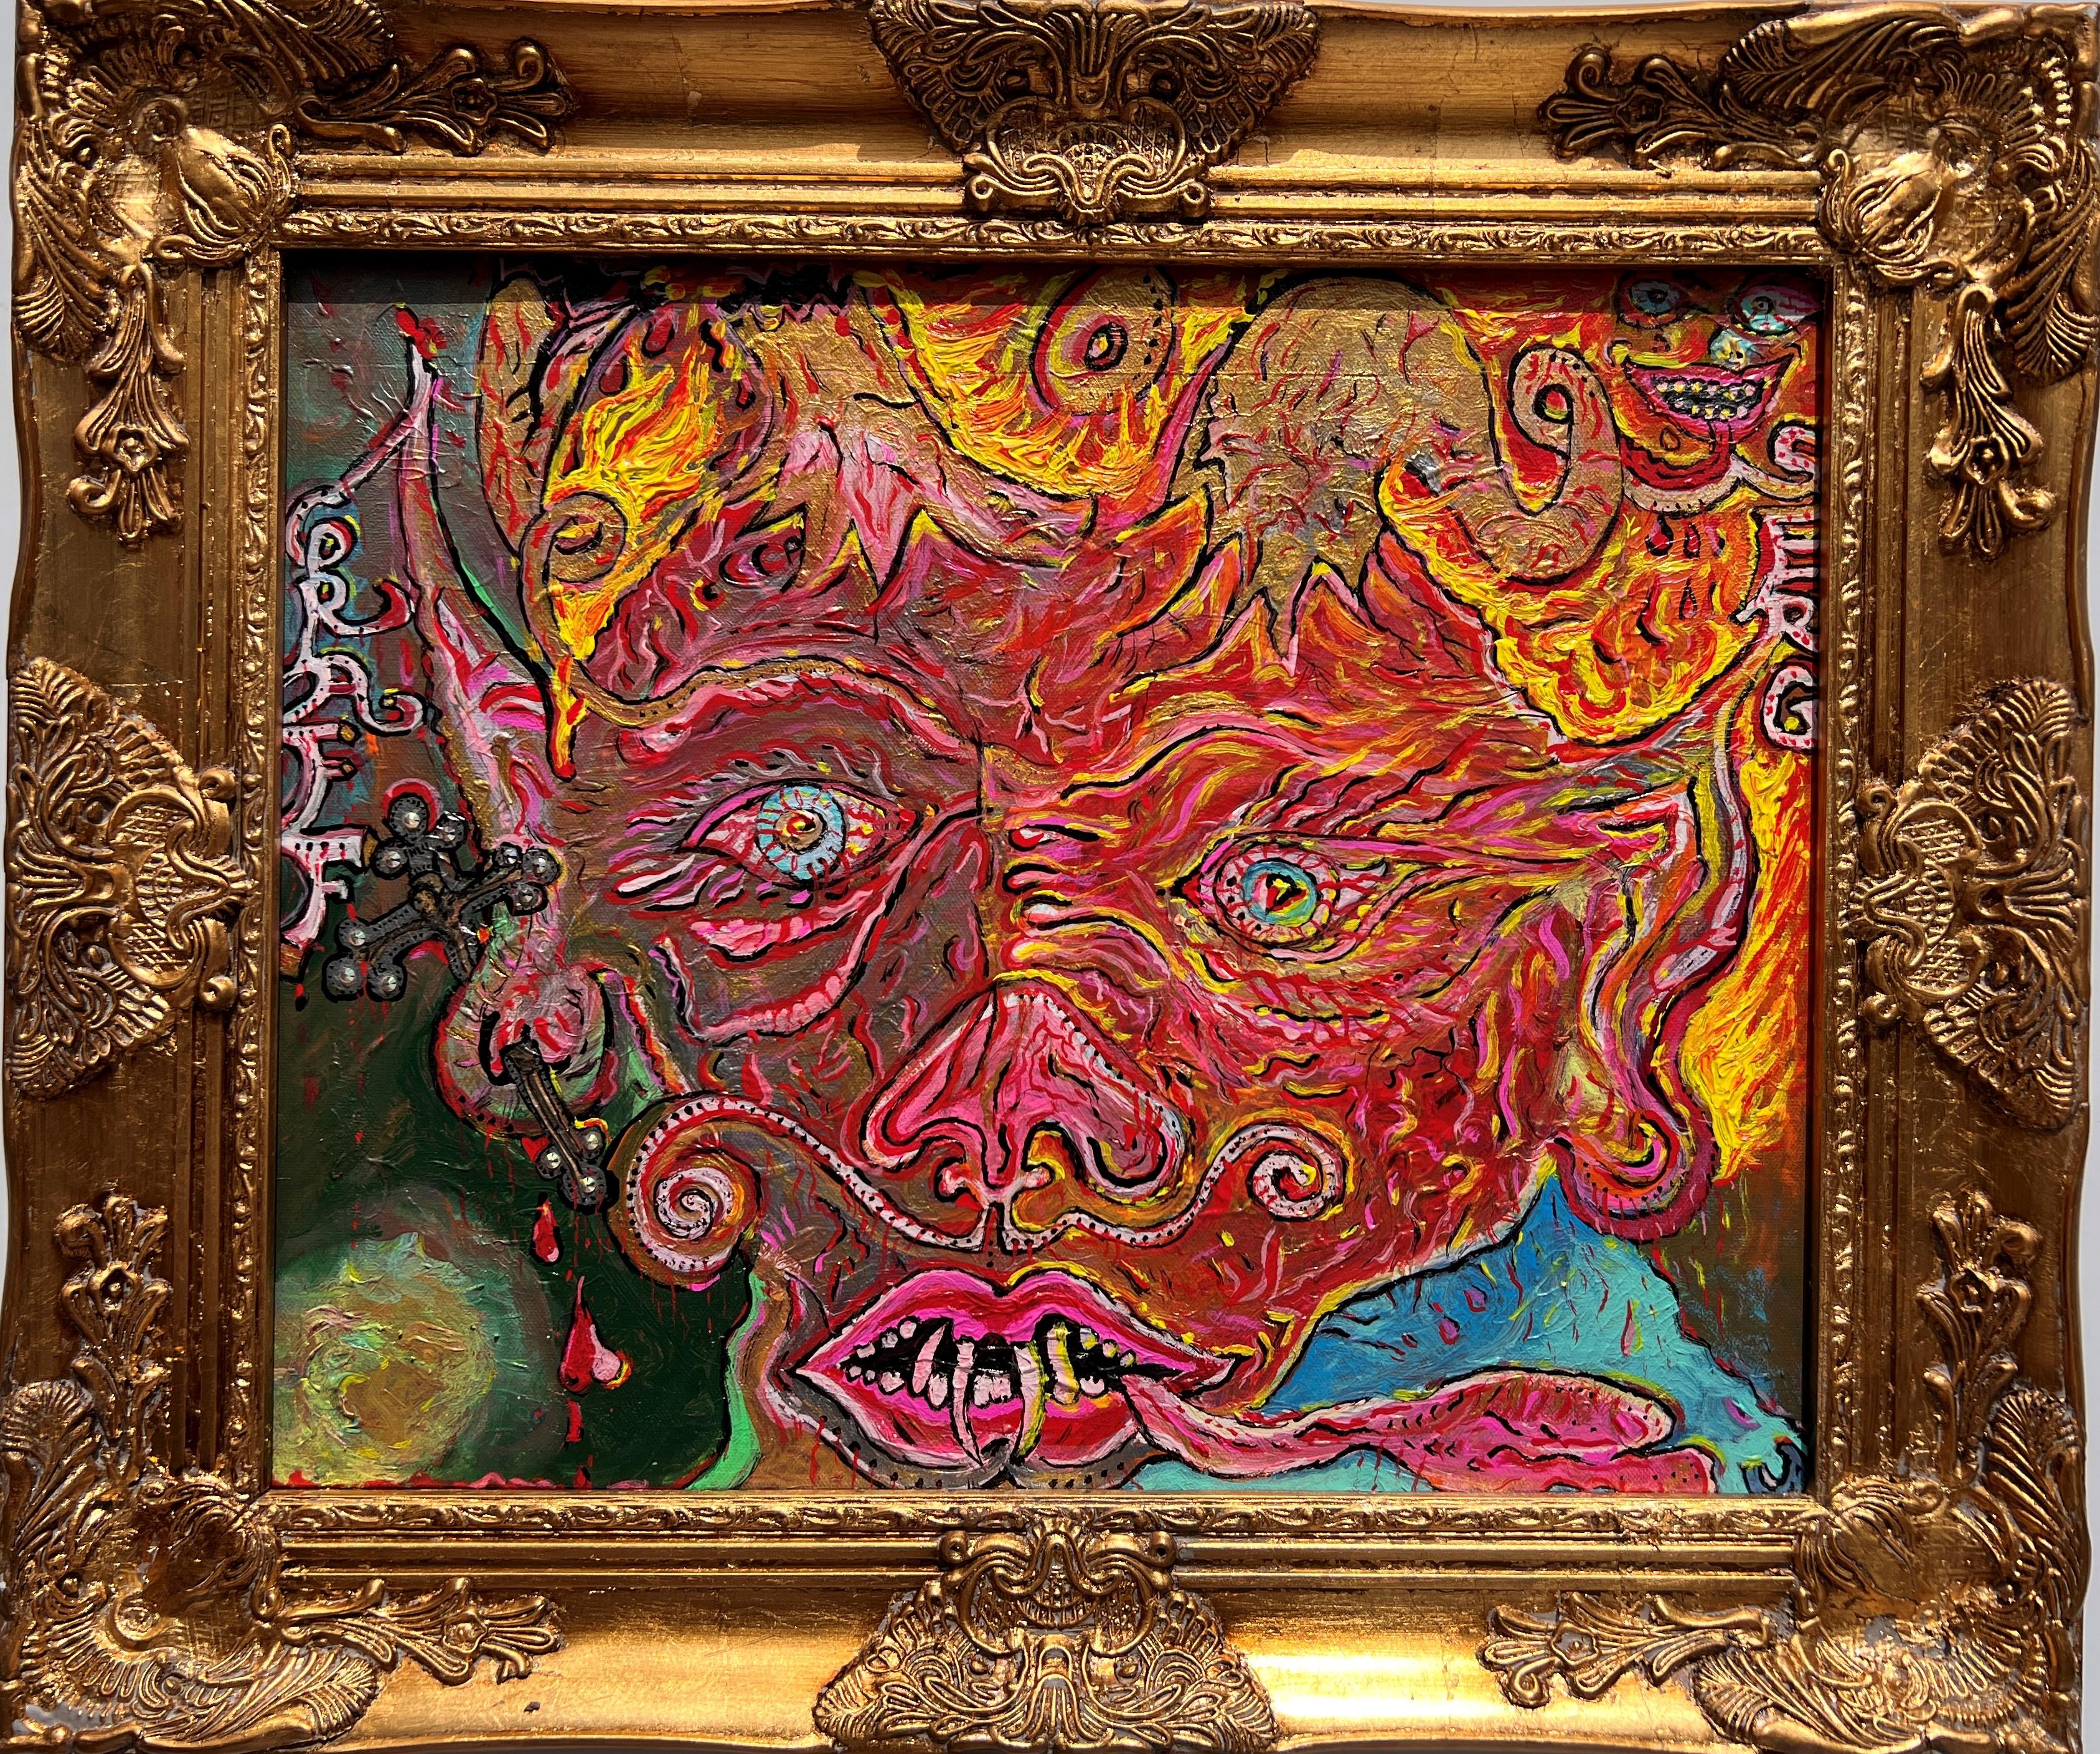 Dies ist ein exklusives, einzigartiges Original-Acryl-Gemälde auf Leinwand in einem abstrakten Fantasy-Stil von Serg Graff mit dem Titel "Apokalypse: Verlorener Seelenfänger". Erstaunlich helle Farben und sehr detailliert.

Einige Details des Bildes